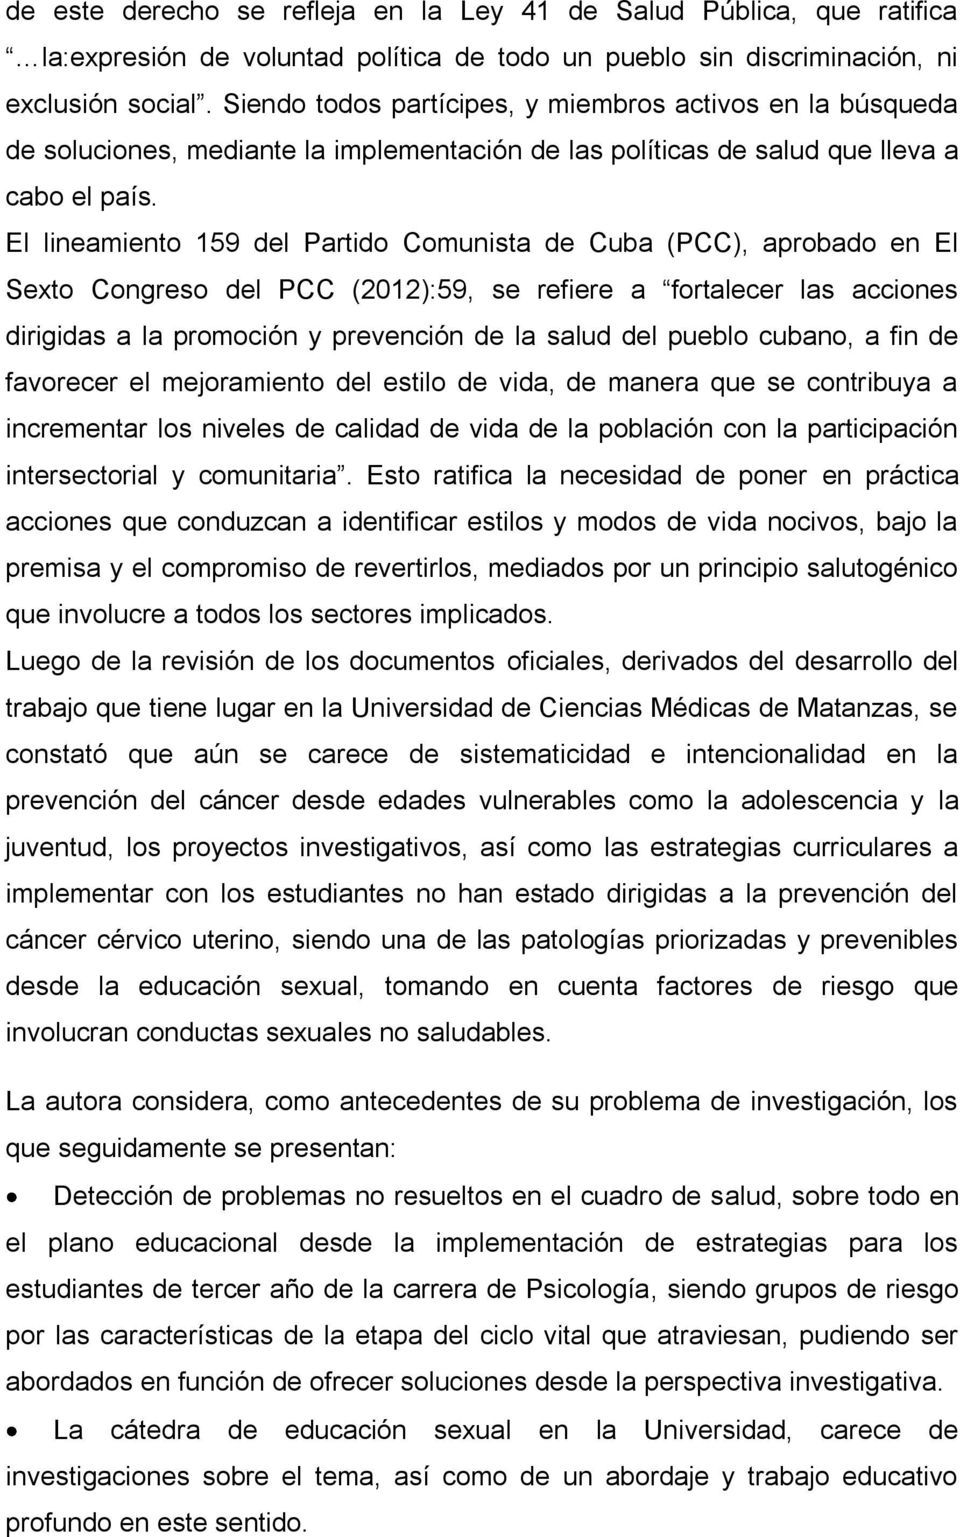 El lineamiento 159 del Partido Comunista de Cuba (PCC), aprobado en El Sexto Congreso del PCC (2012):59, se refiere a fortalecer las acciones dirigidas a la promoción y prevención de la salud del